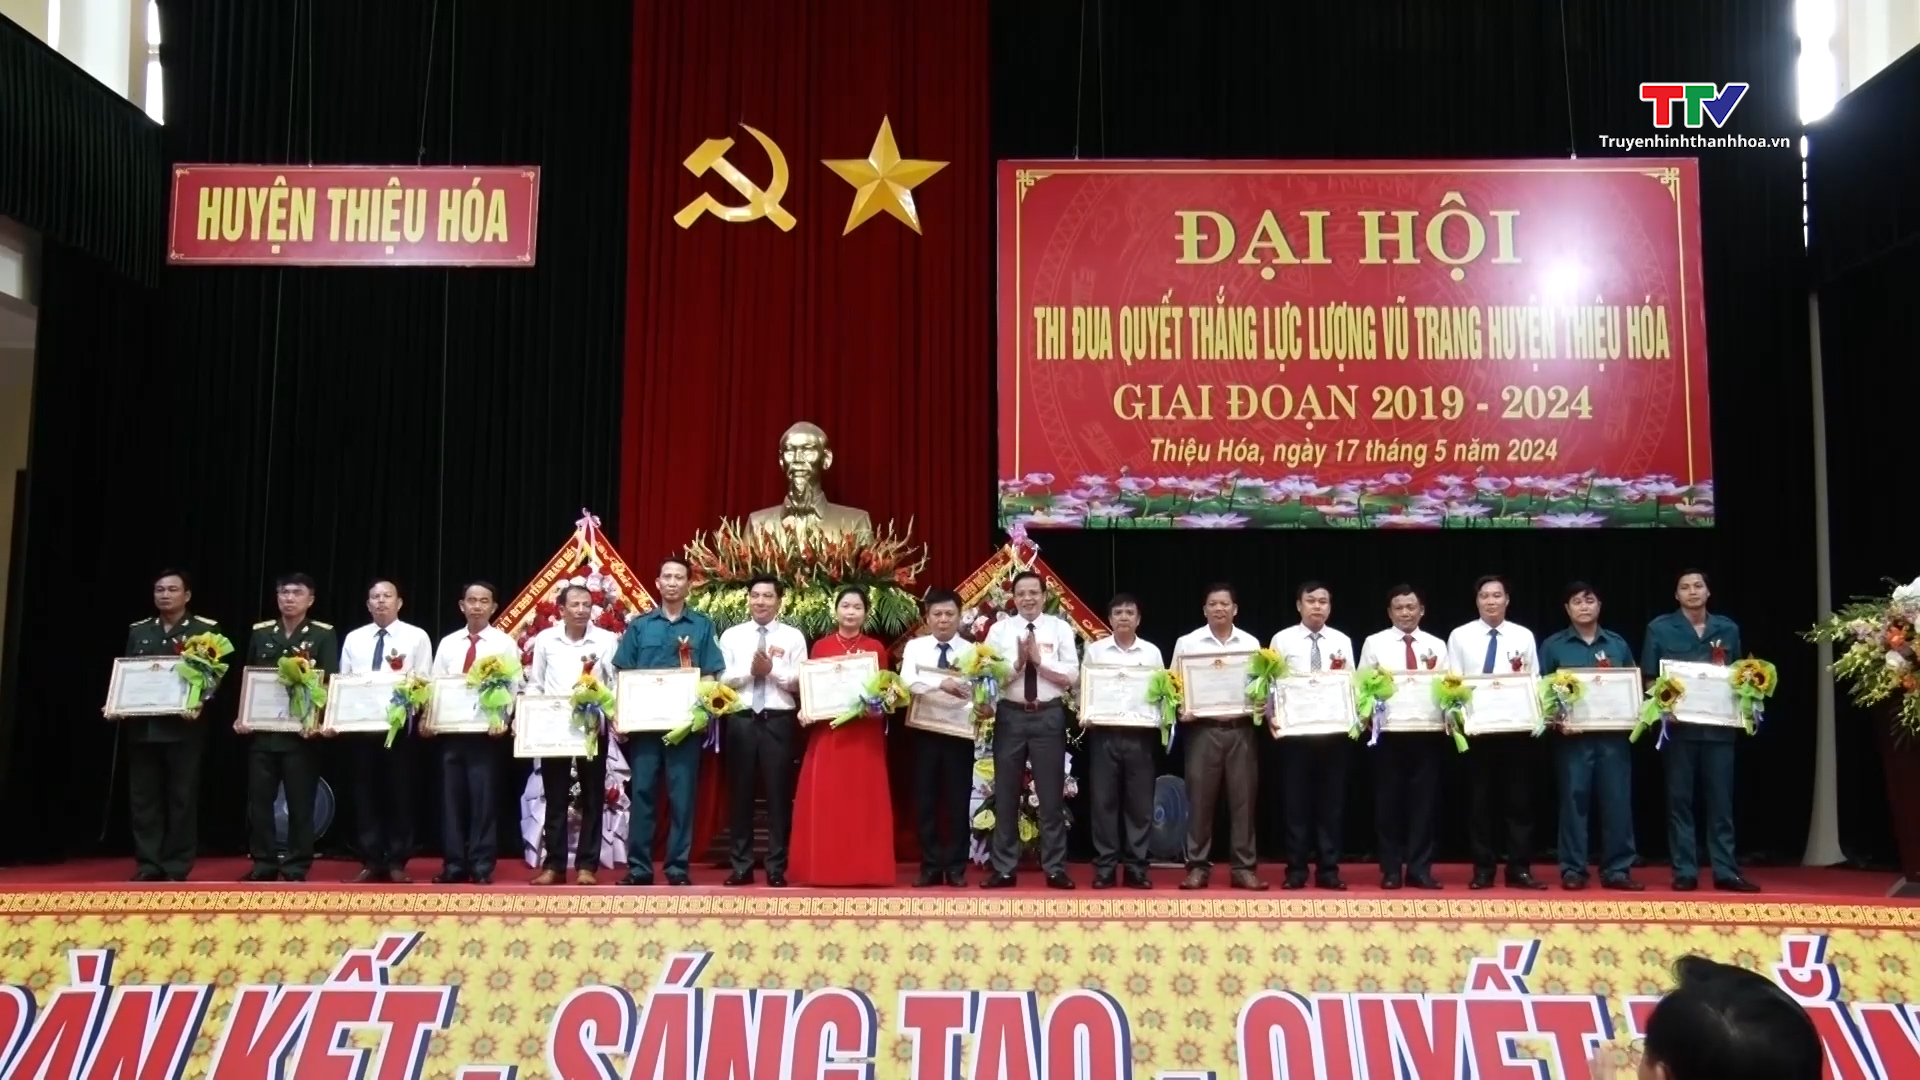 Đại hội thi đua quyết thắng lực lượng vũ trang huyện Thiệu Hoá, giai đoạn 2019 - 2024- Ảnh 1.